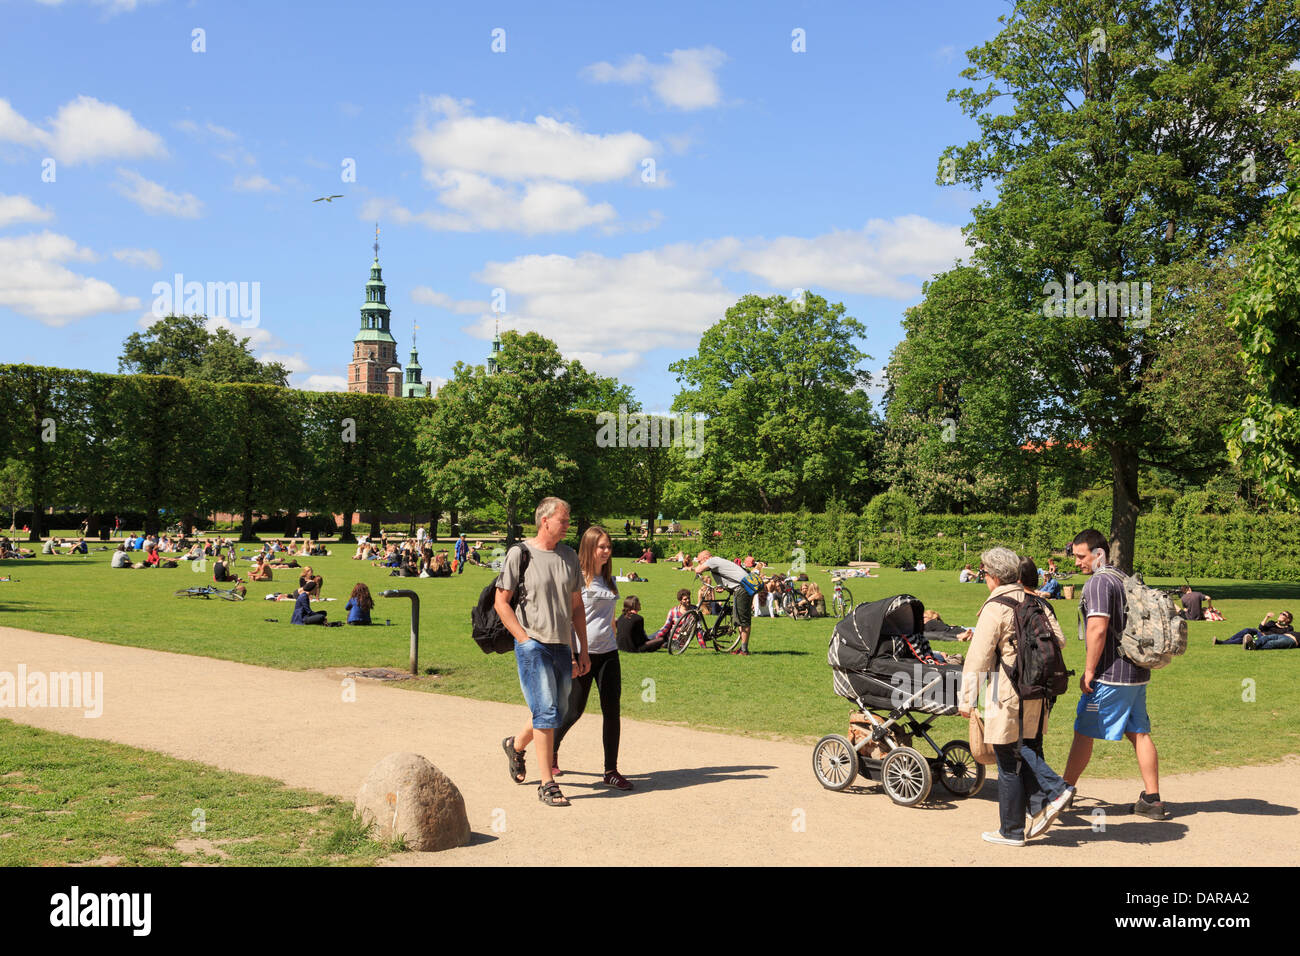 Persone che passeggiano e relax nel giardino del re o Royal Park in estate il sole. Copenaghen, Zelanda, Danimarca Foto Stock